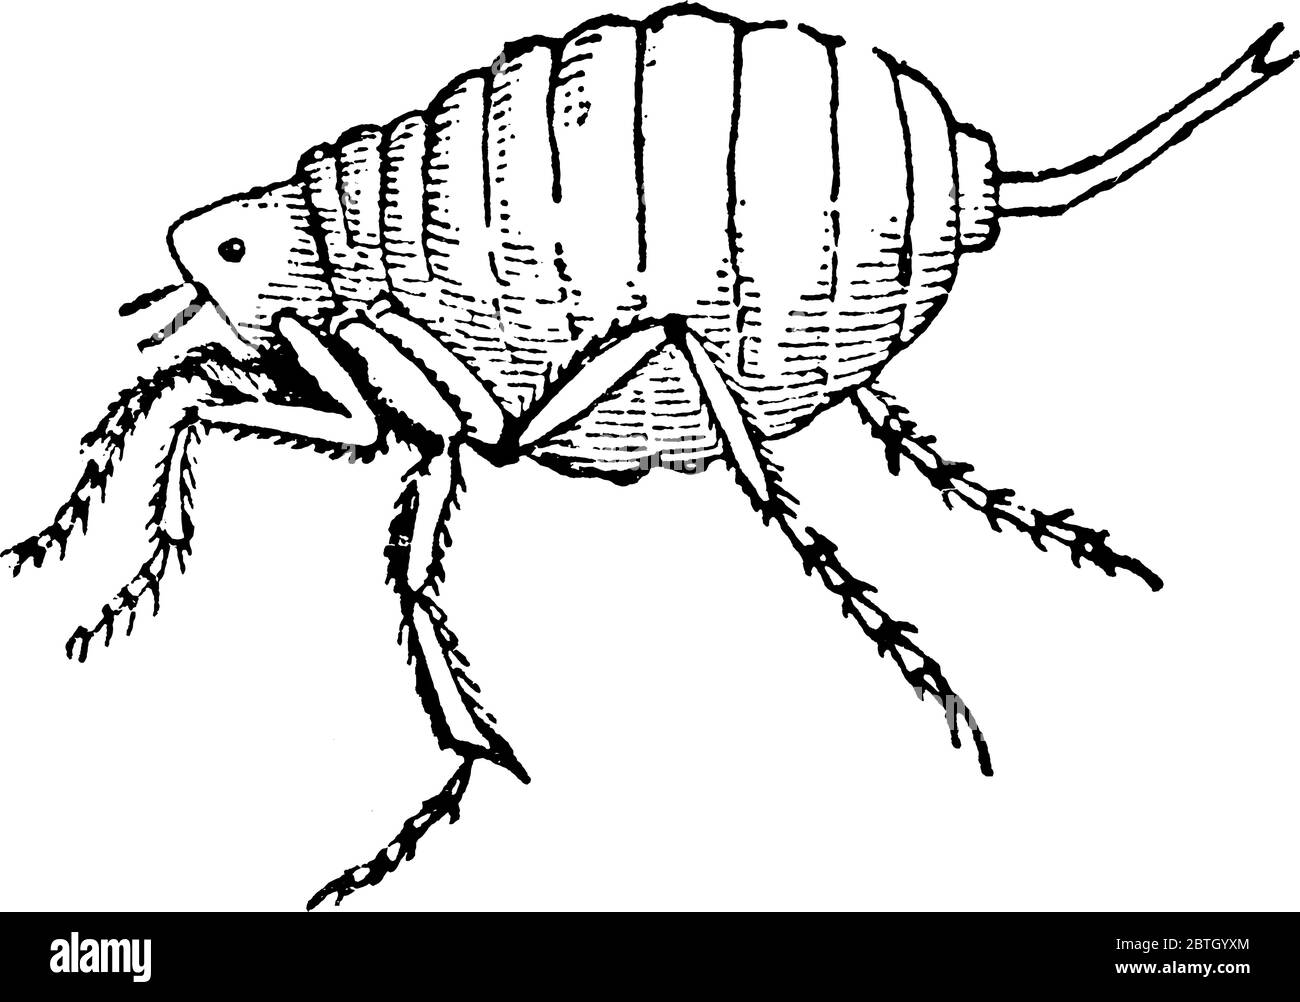 El macho, Chigoe Flea, Tunga penetra, un artrópodo parásito, encontrado en climas tropicales, sobre todo en América del Sur y las Indias Occidentales, línea de cosecha Ilustración del Vector